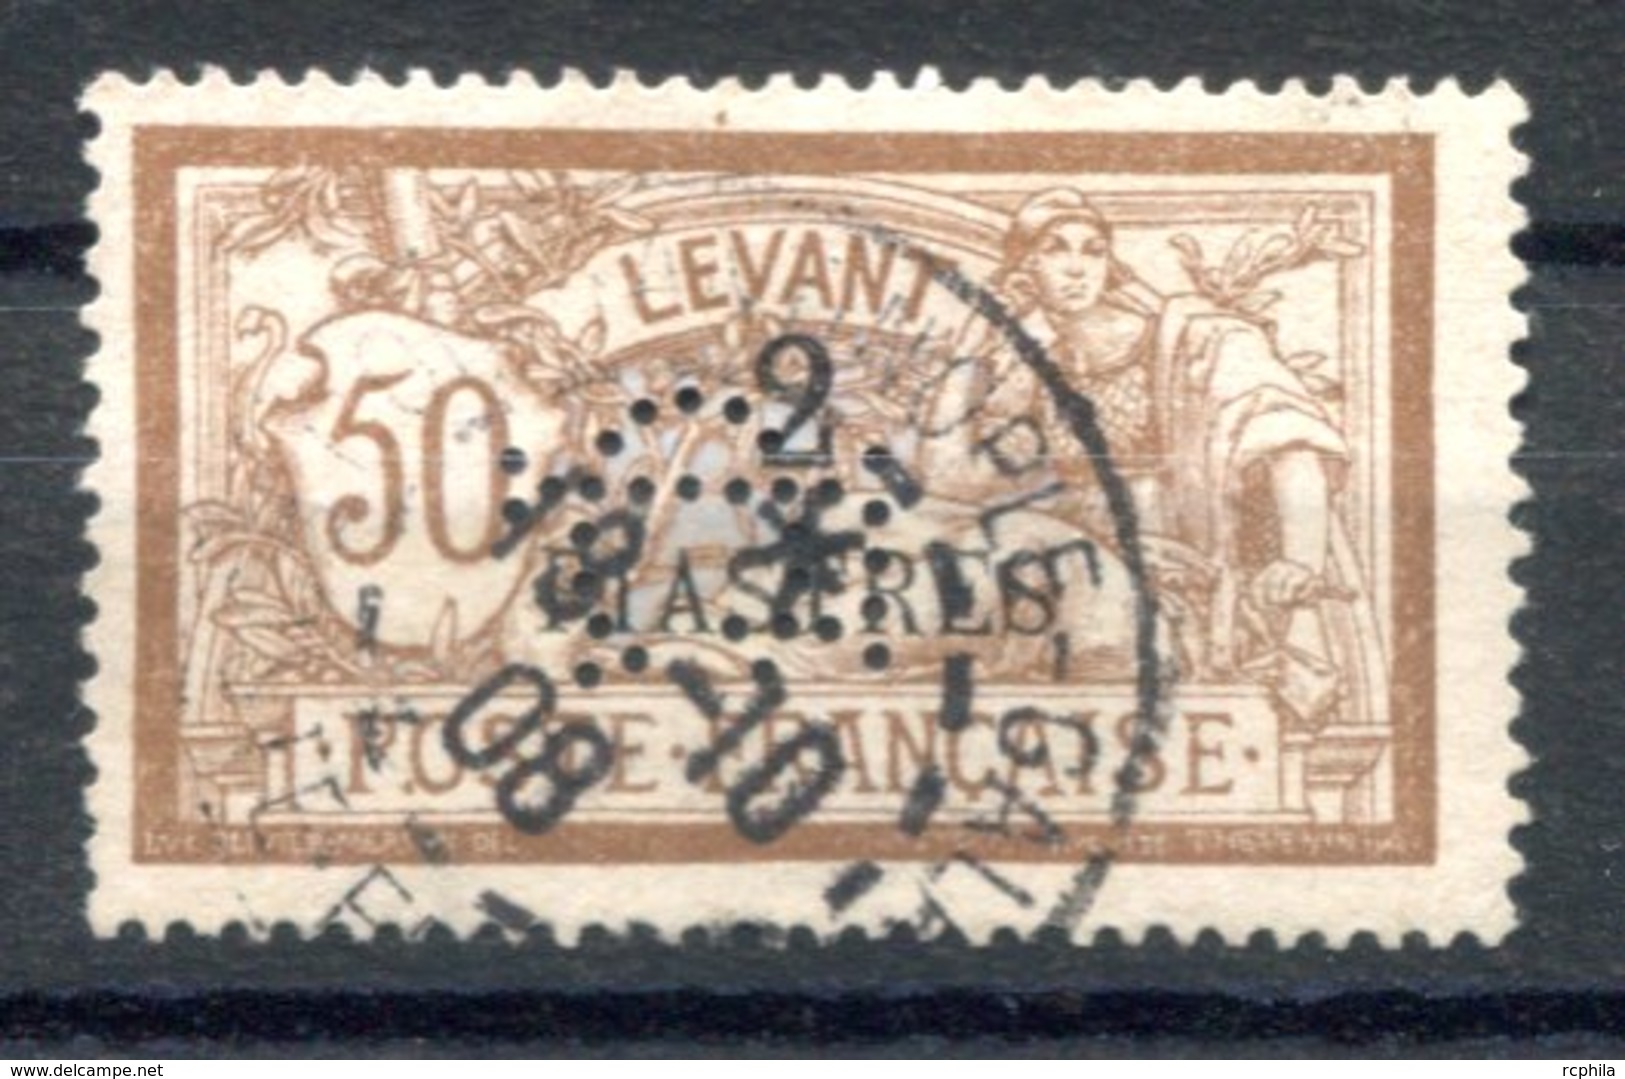 RC 17086 LEVANT N° 20 MERSON PERFORÉ "CL" OBLITÉRÉ - Oblitérés